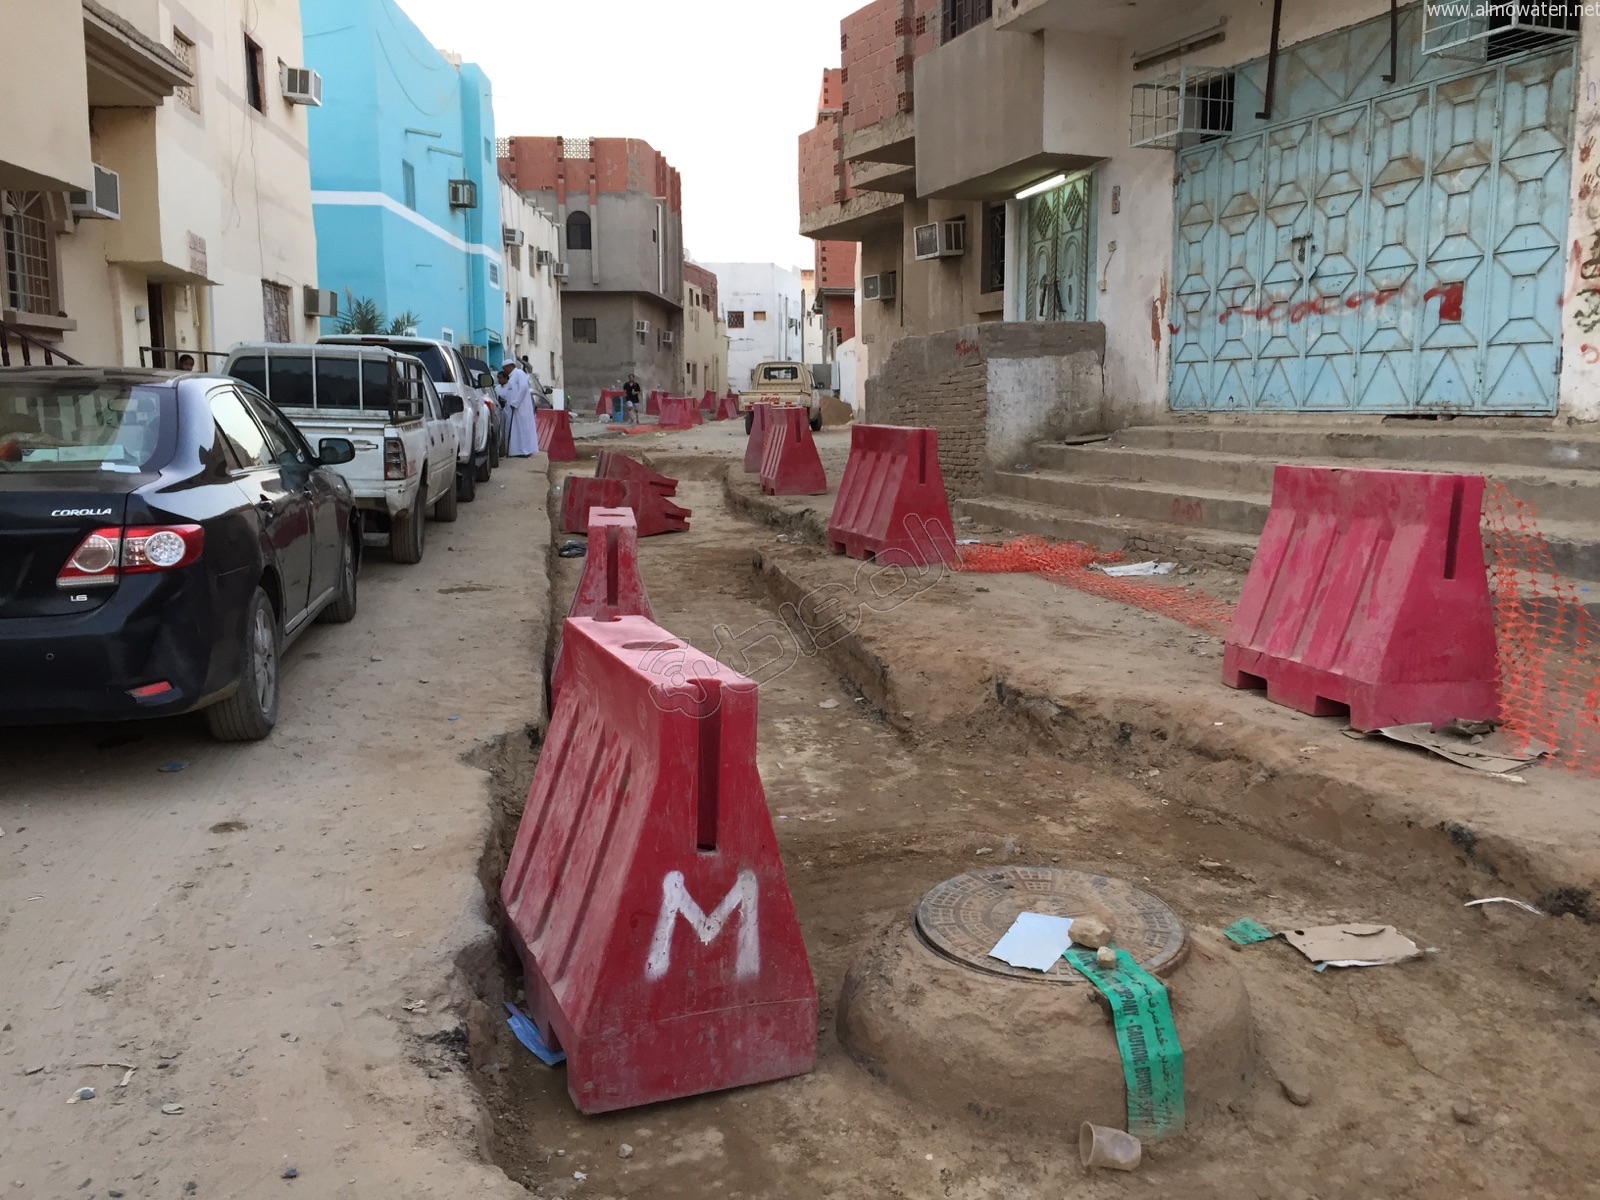 حفريات وكيابل مكشوفة تهدد أهالي حي كيلو 11 بـ #جدة